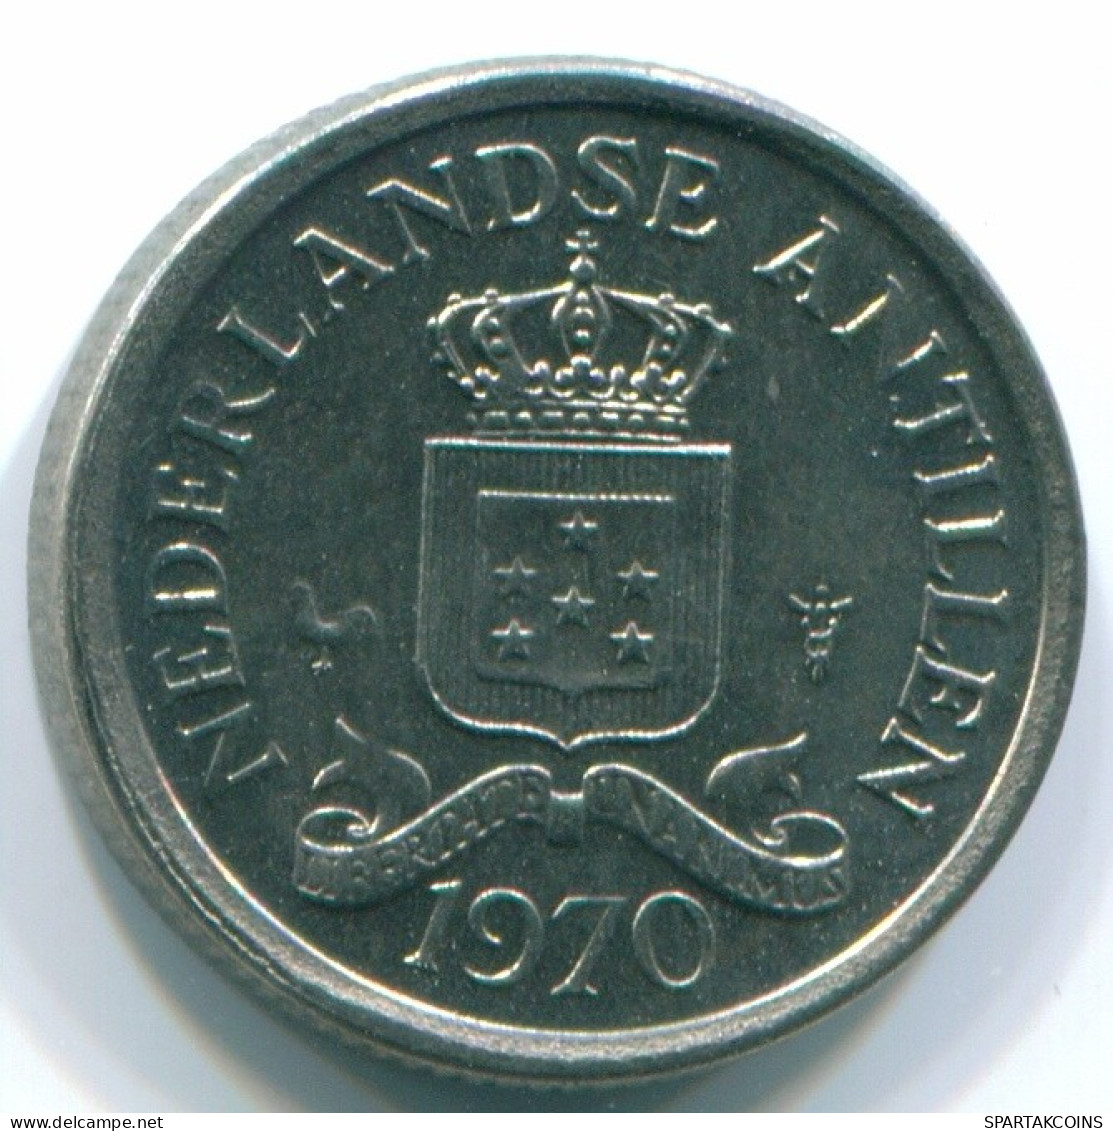 10 CENTS 1970 NETHERLANDS ANTILLES Nickel Colonial Coin #S13340.U.A - Niederländische Antillen